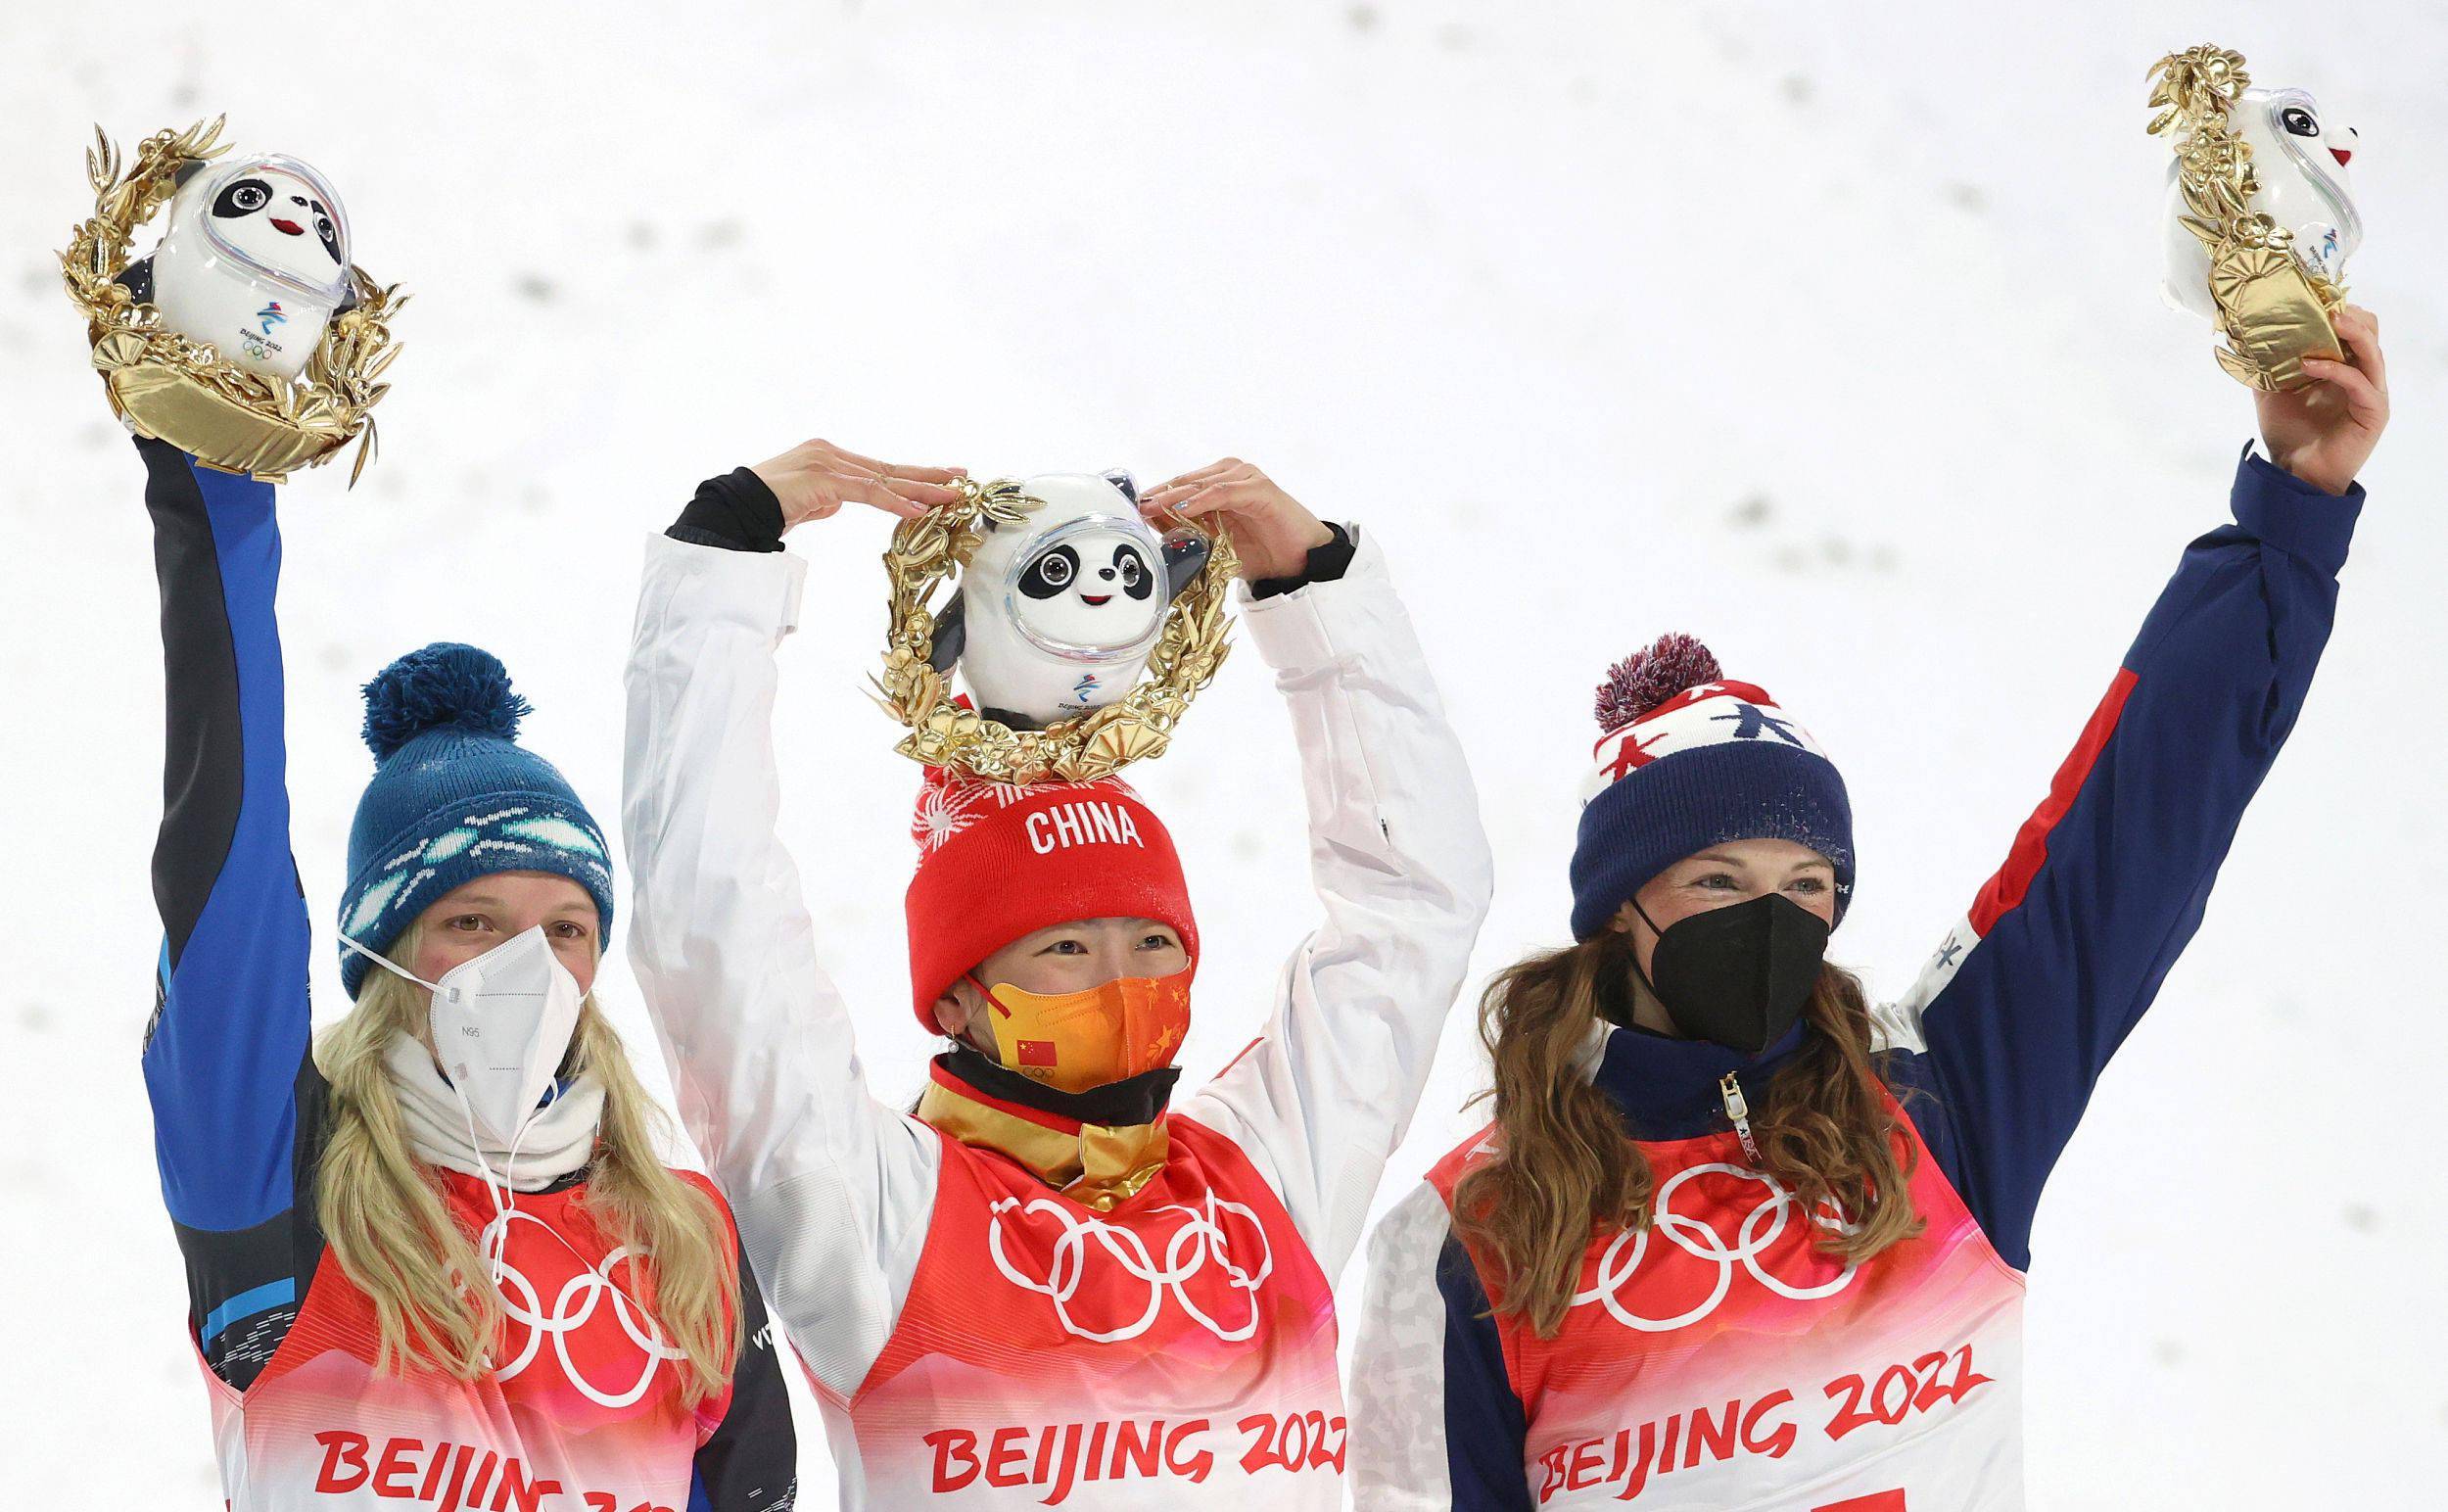 2 月 14 日晚,与三届奥运会金牌擦肩而过的徐梦桃,在她第四次站上奥运